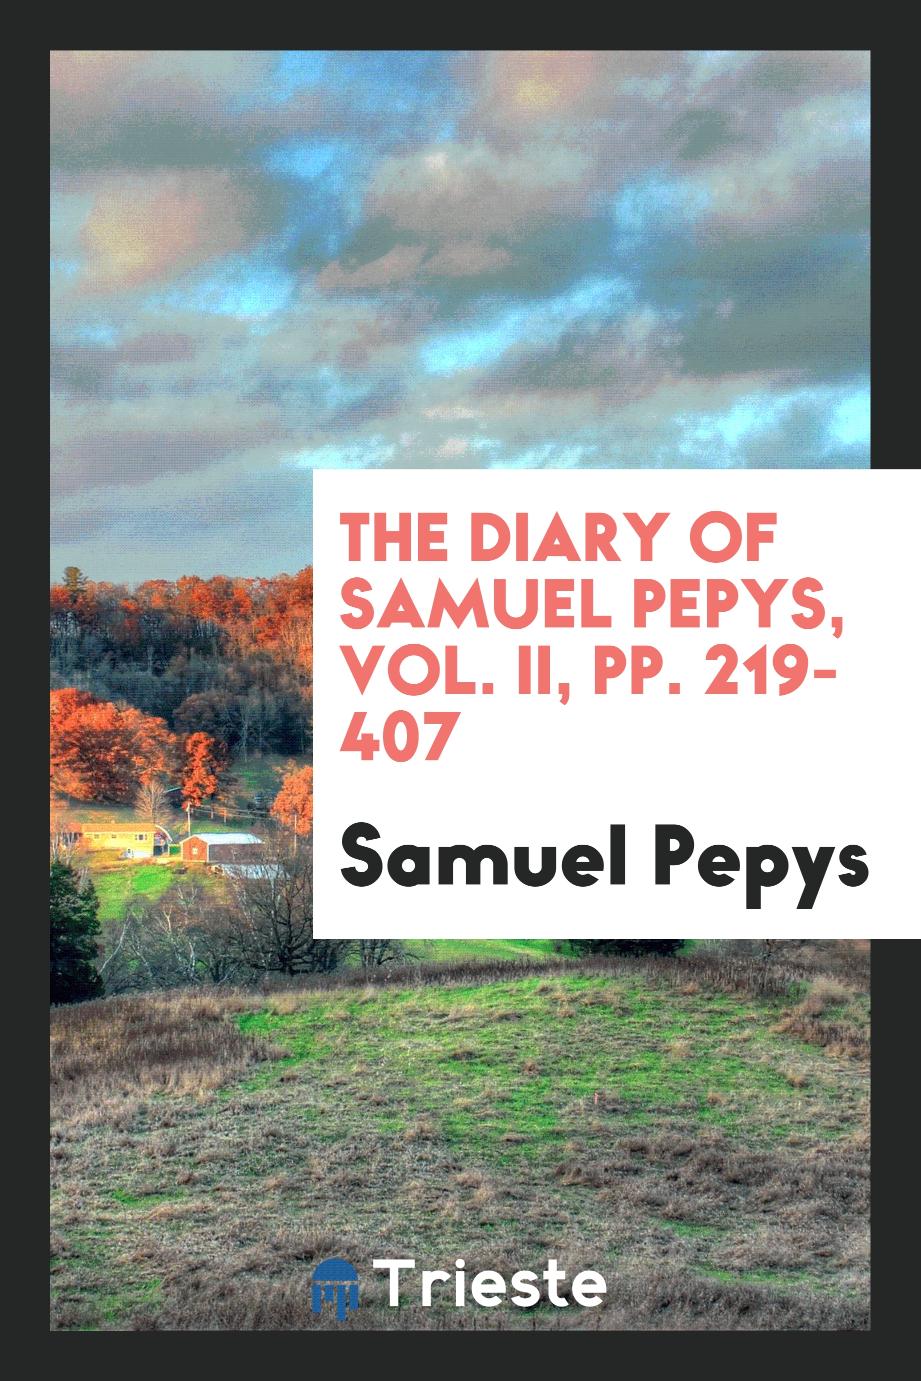 The Diary of Samuel Pepys, Vol. II, pp. 219-407